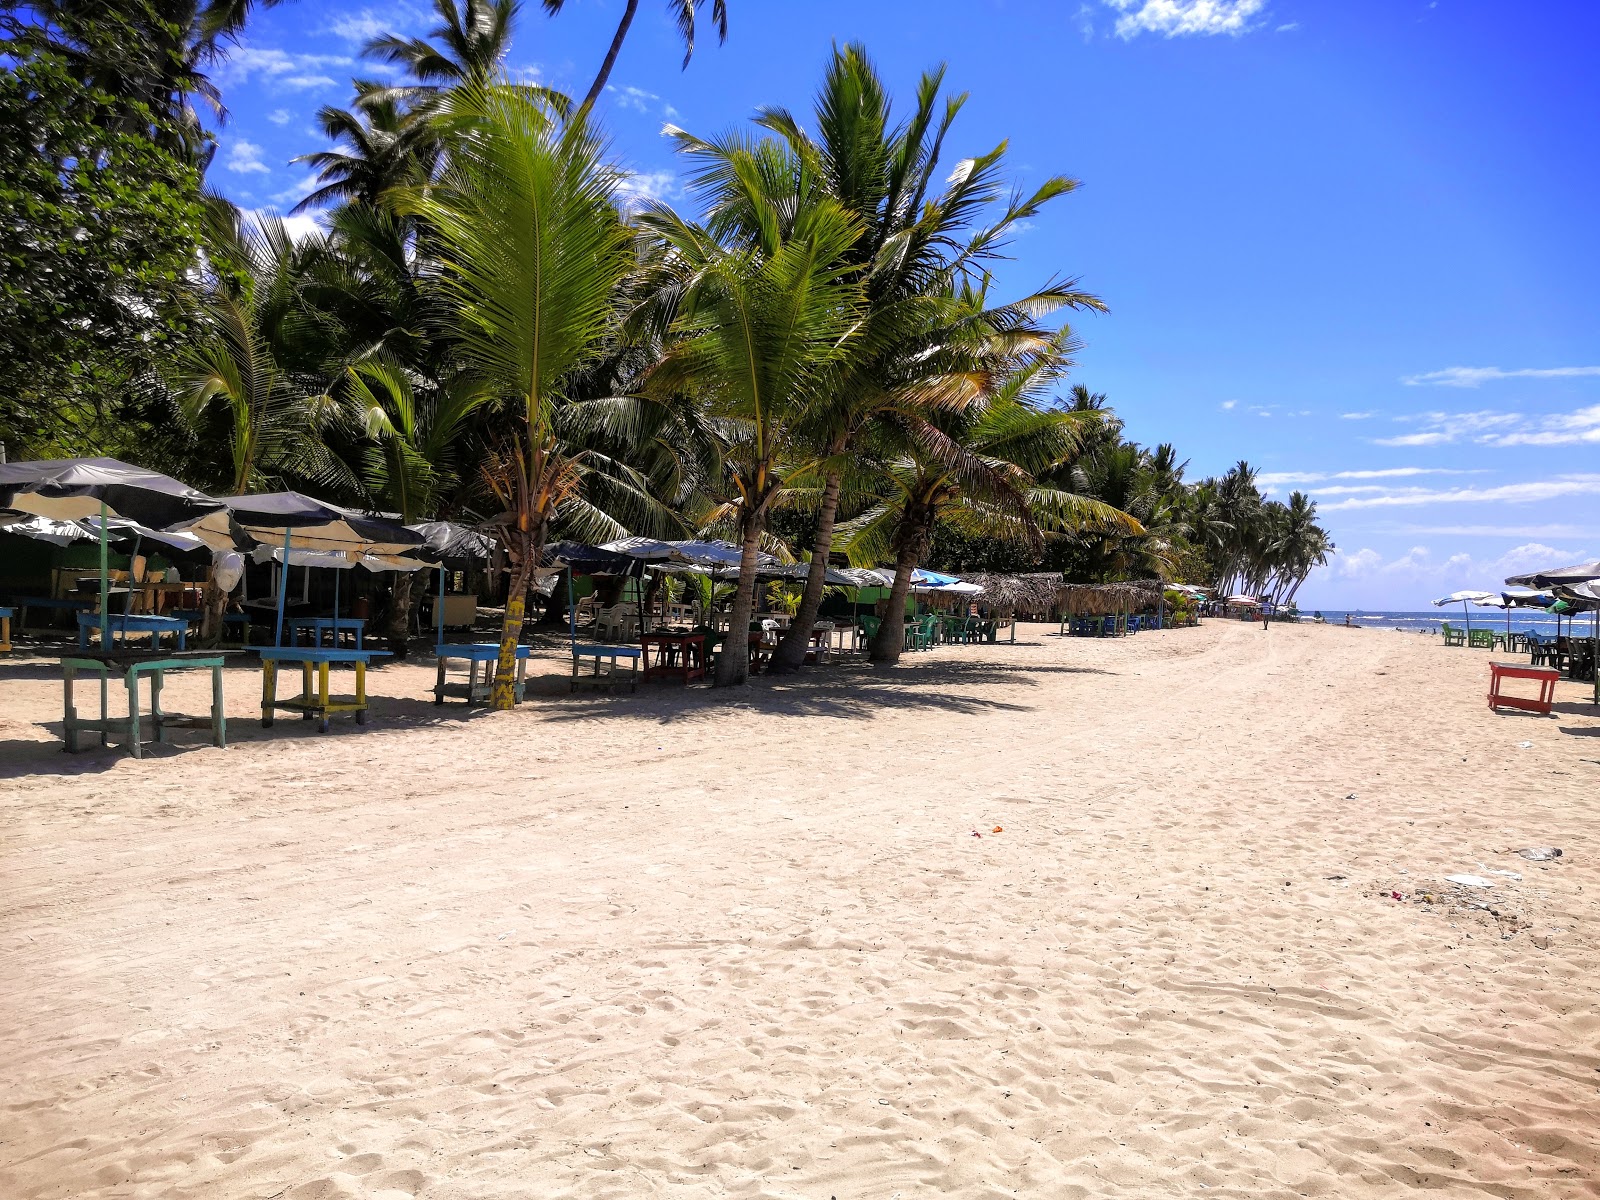 Φωτογραφία του Guayacanes beach με μακρά ευθεία ακτή